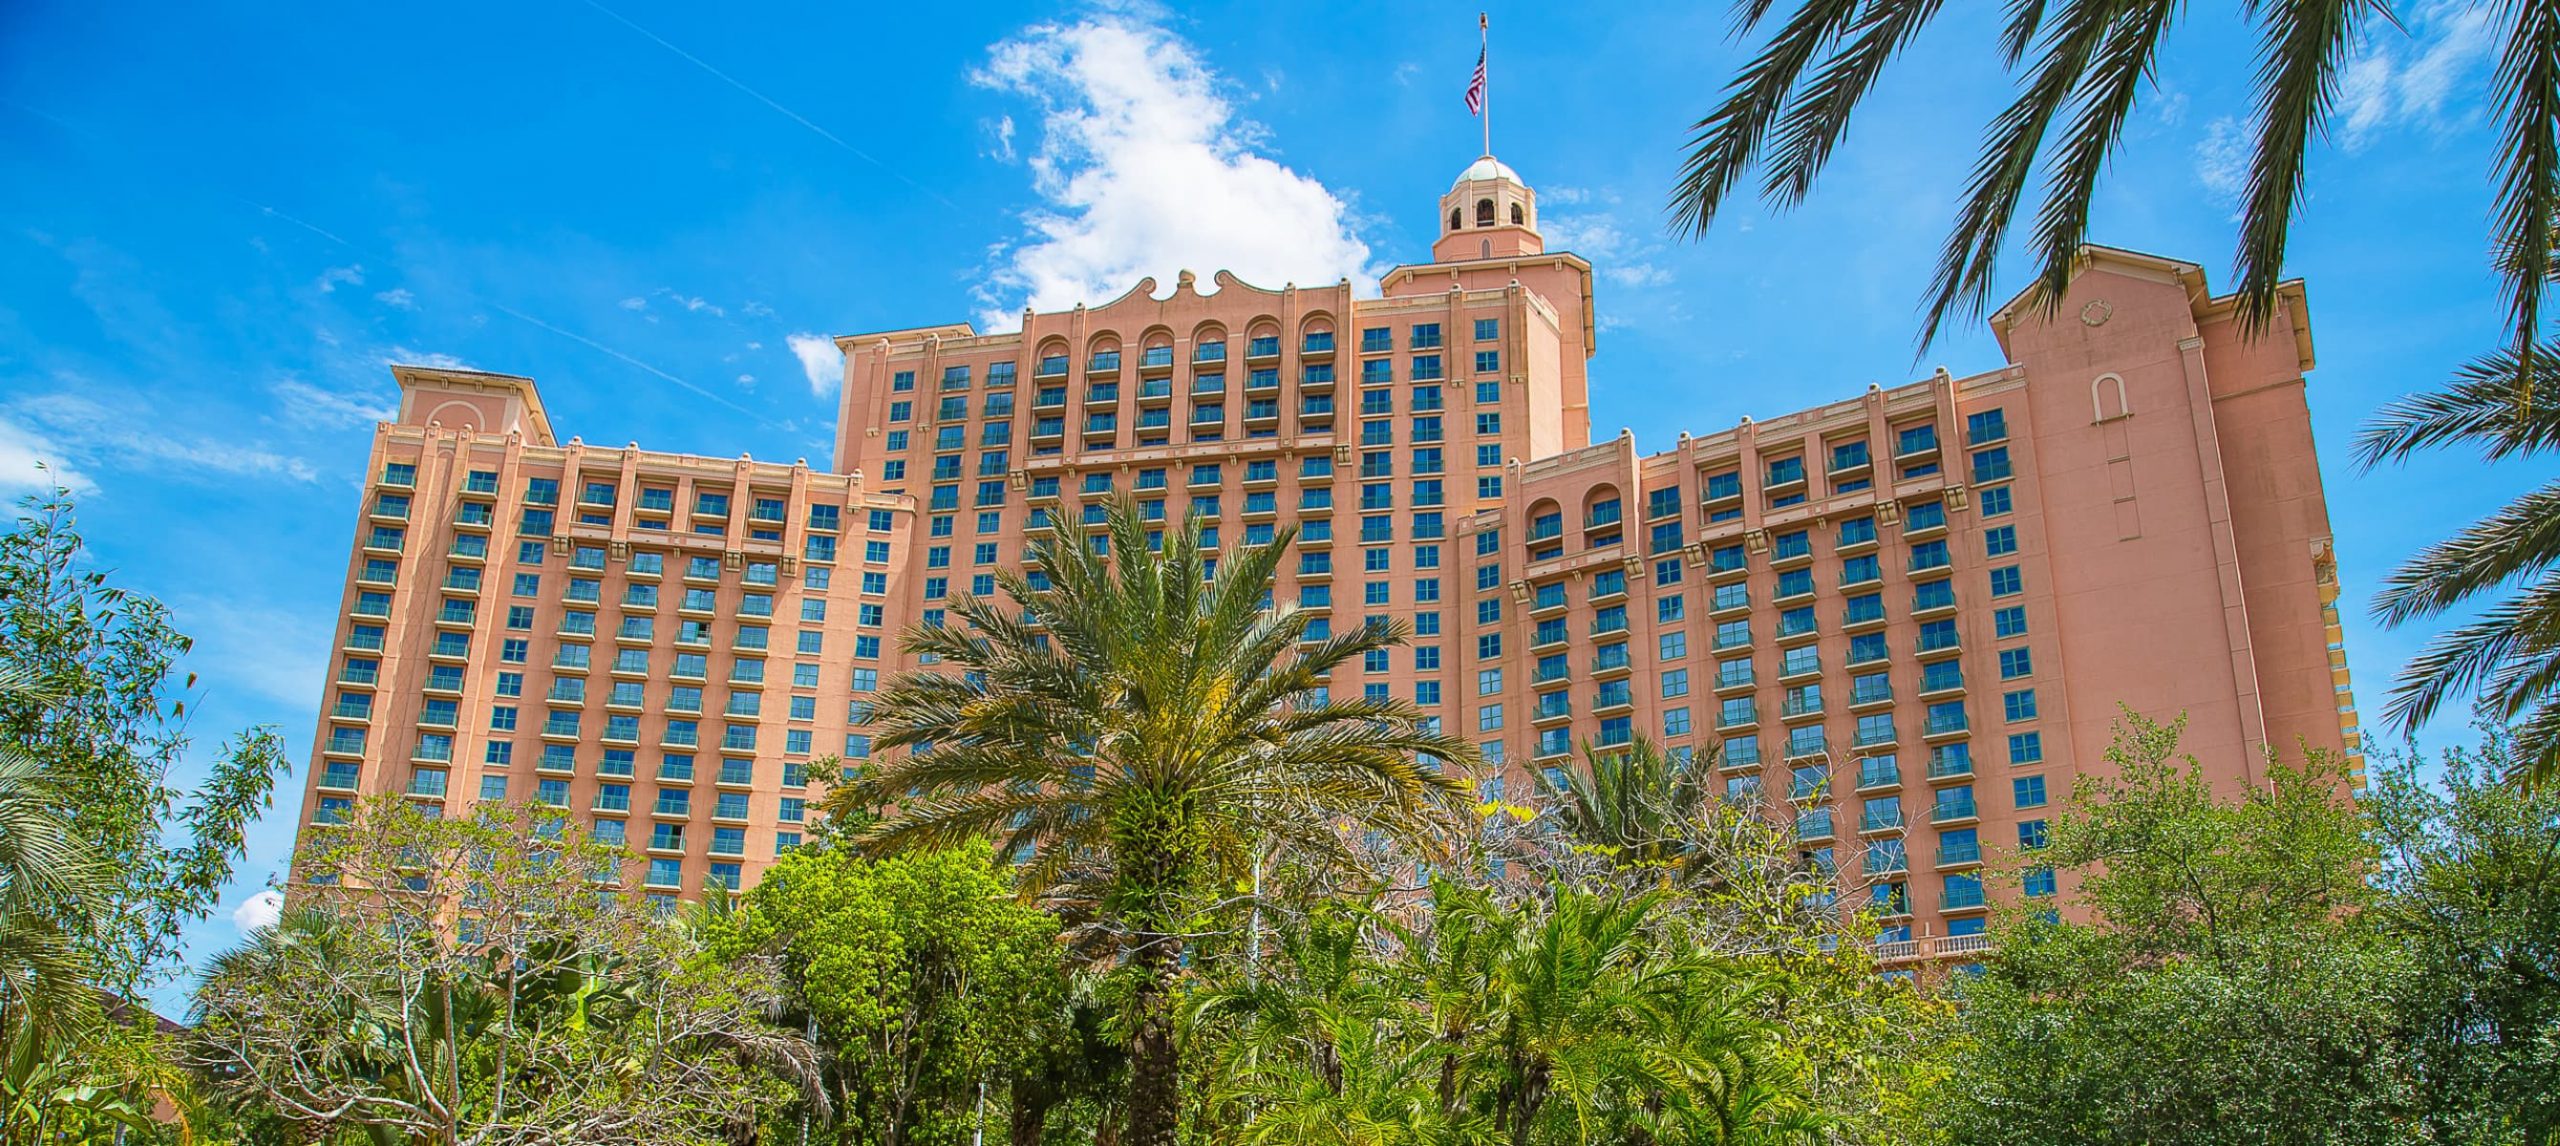 Best Hotels In Orlando